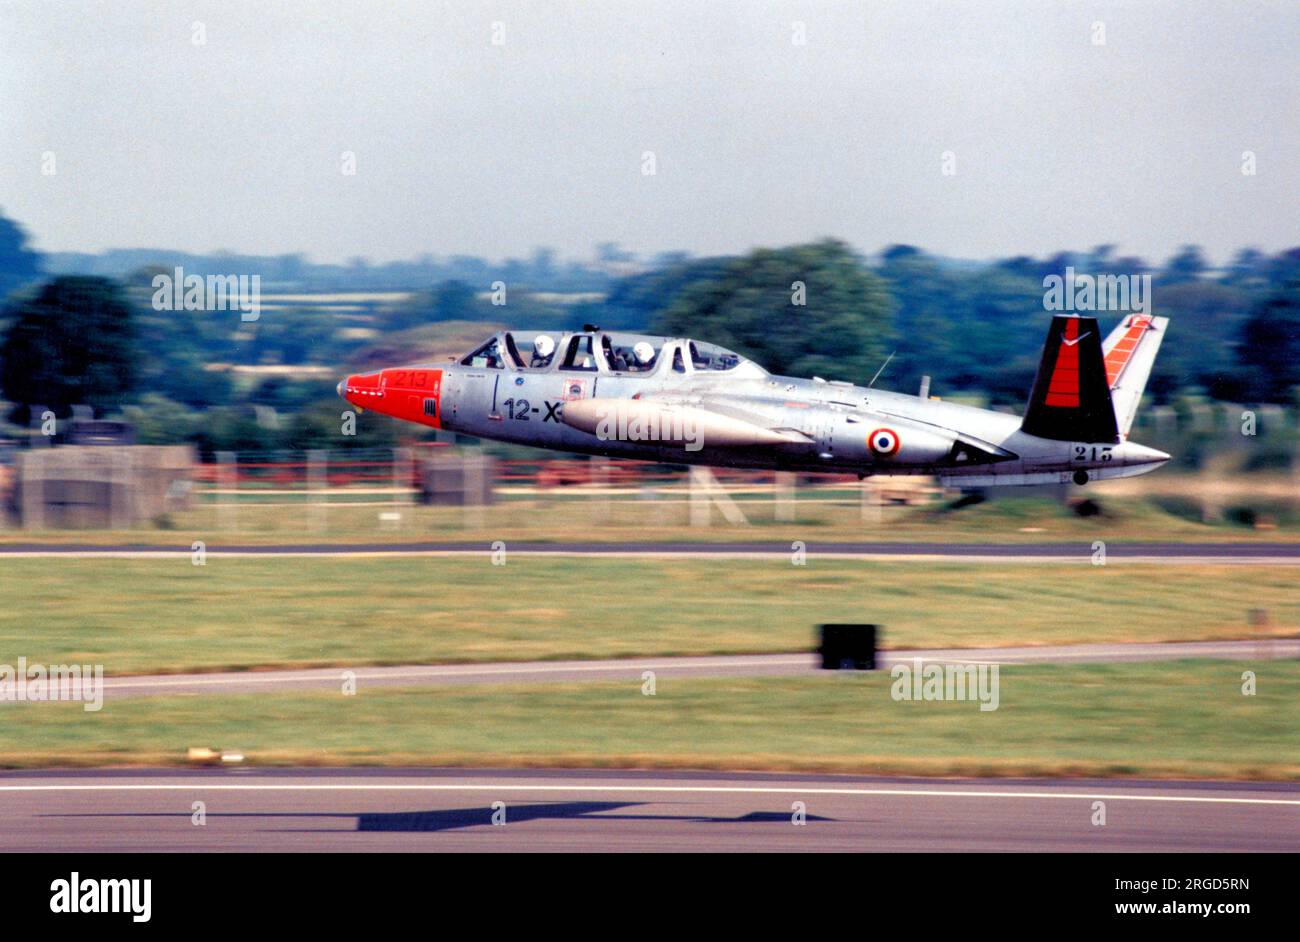 Armée de l'Air - Fouga CM.170 Magister 213 - 12-XO, auf der RAF Fairford im Juli 1991. (Armee de l'Air - Französische Luftwaffe). Stockfoto